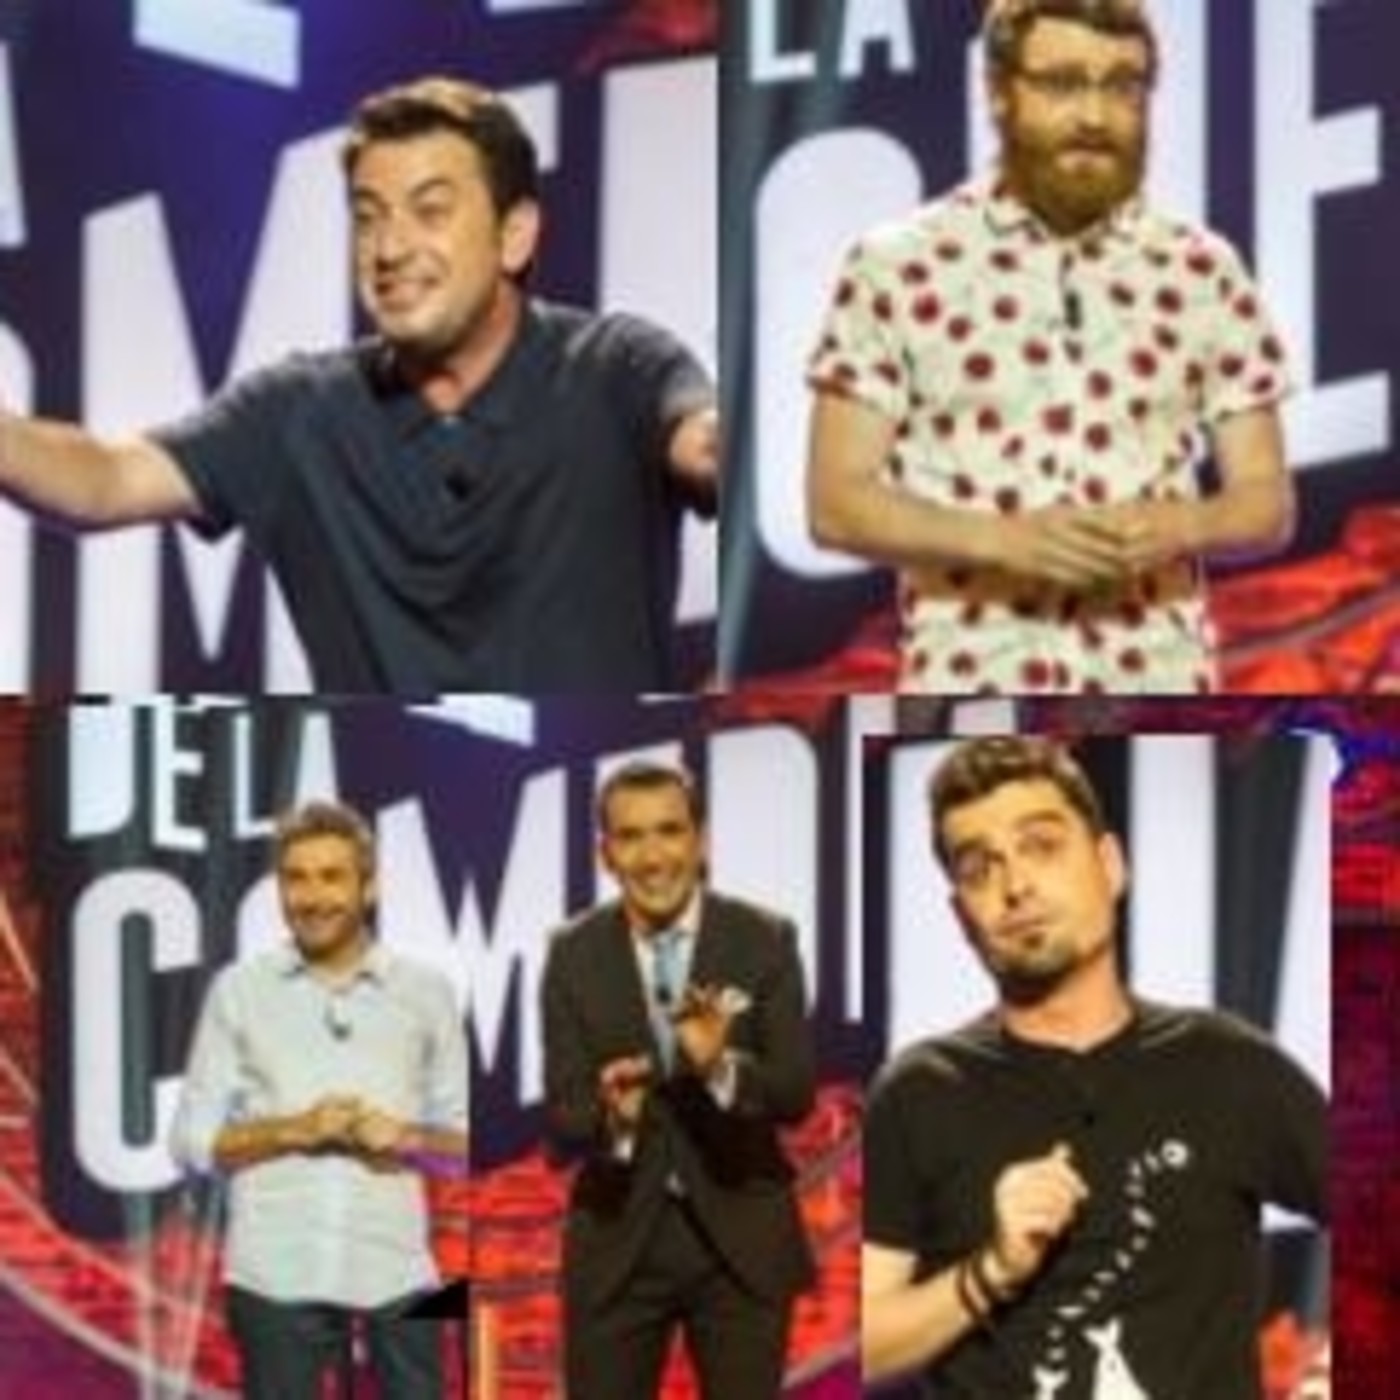 El Club de la Comedia T6x08 - Frank Blanco, Arturo Valls, Manuel Burque, Miguel Lago y Alex Clavero